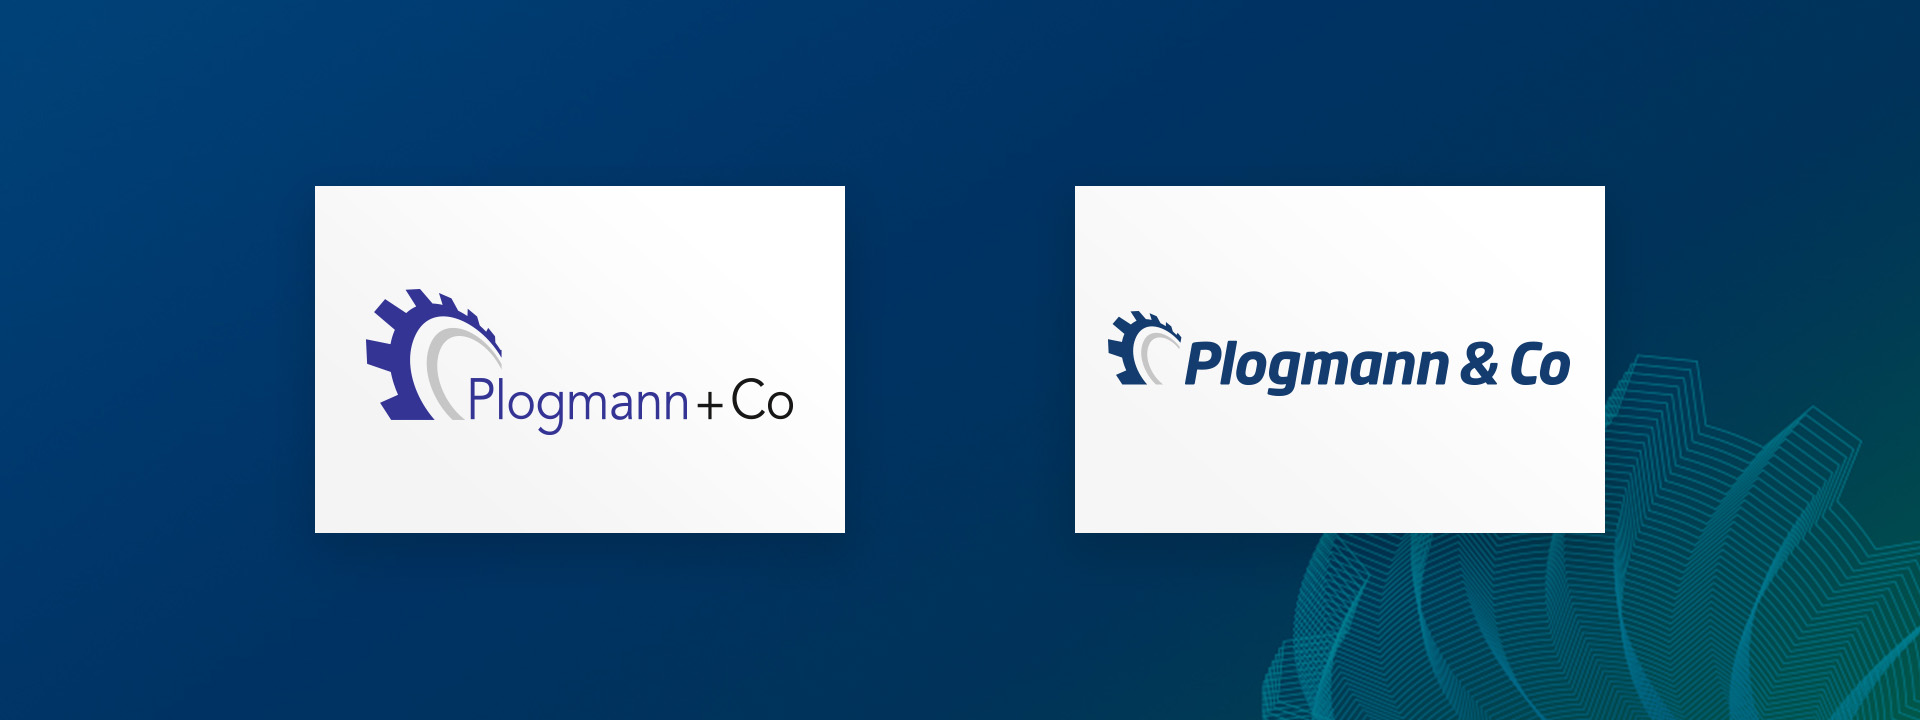 Plogmann - Besser in jedem Detail